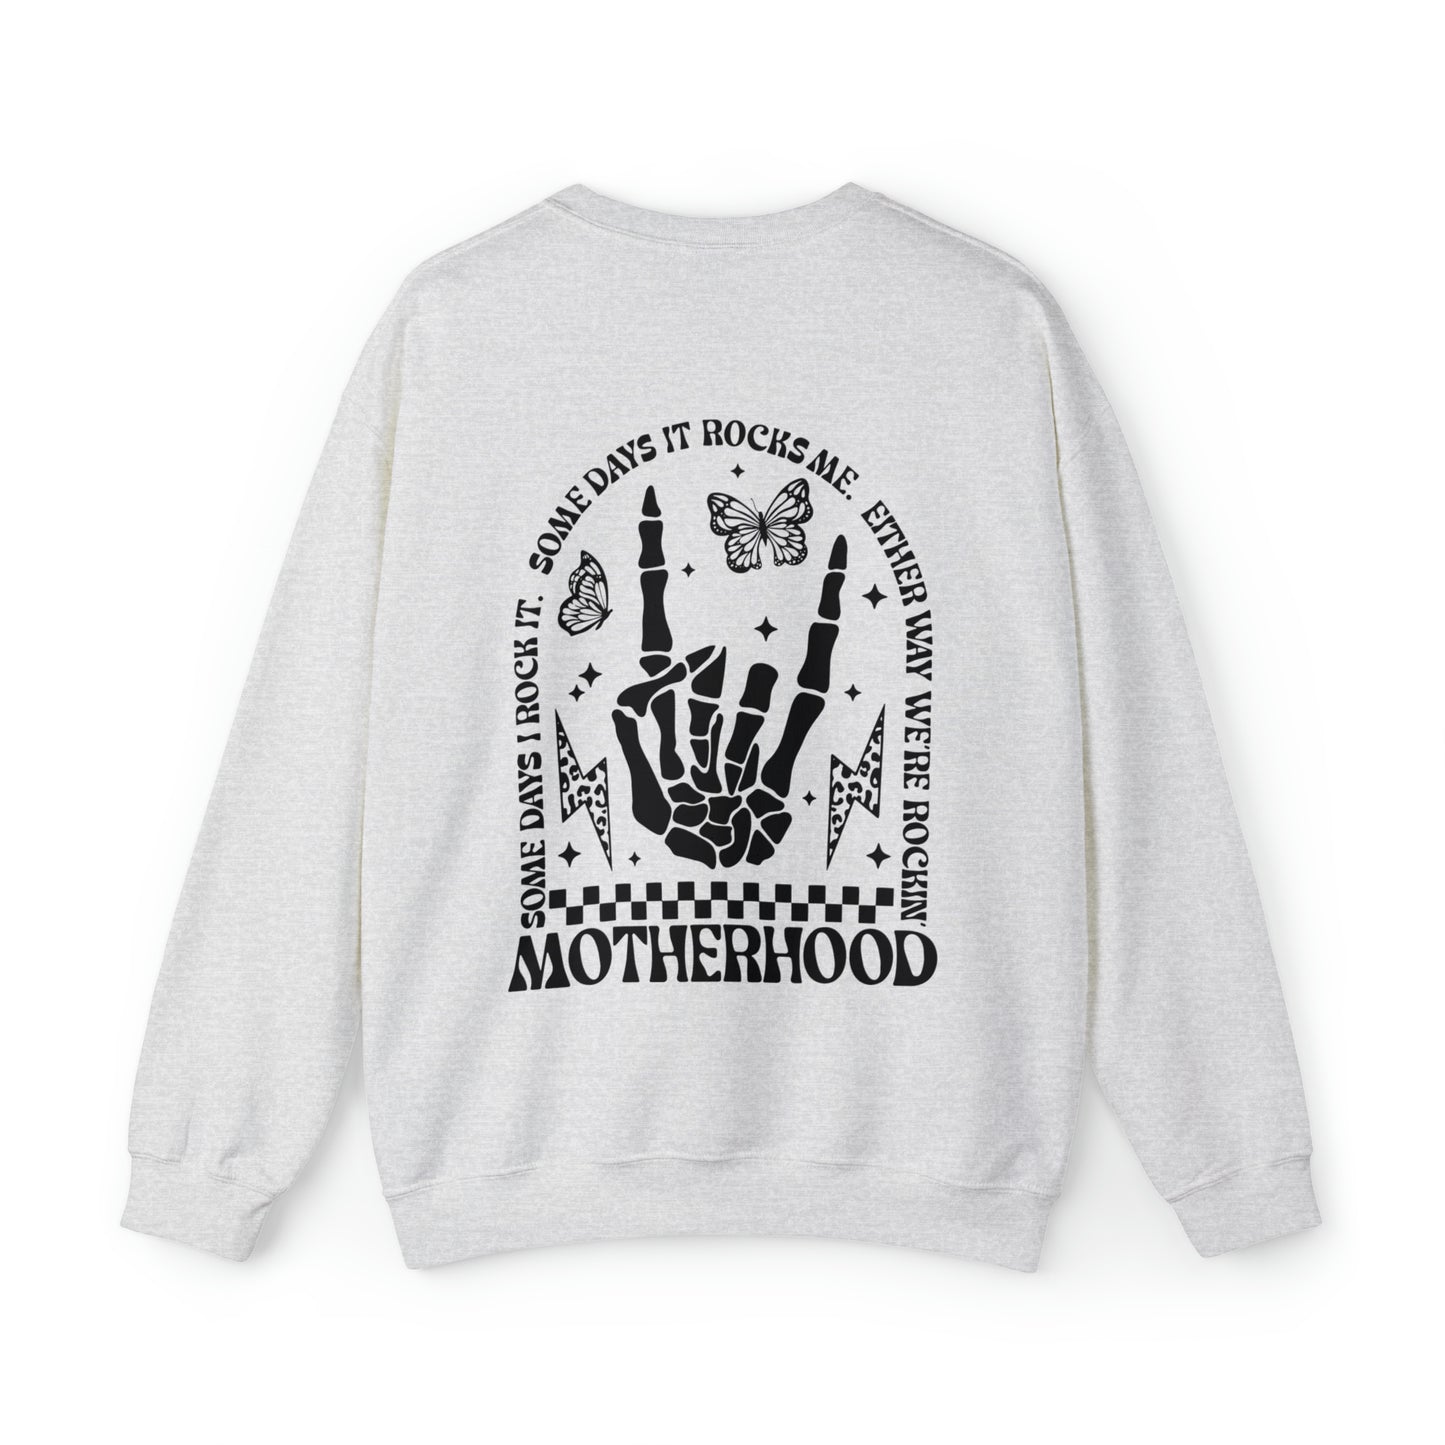 Motherhood Rocks Unisex Crewneck Sweatshirt